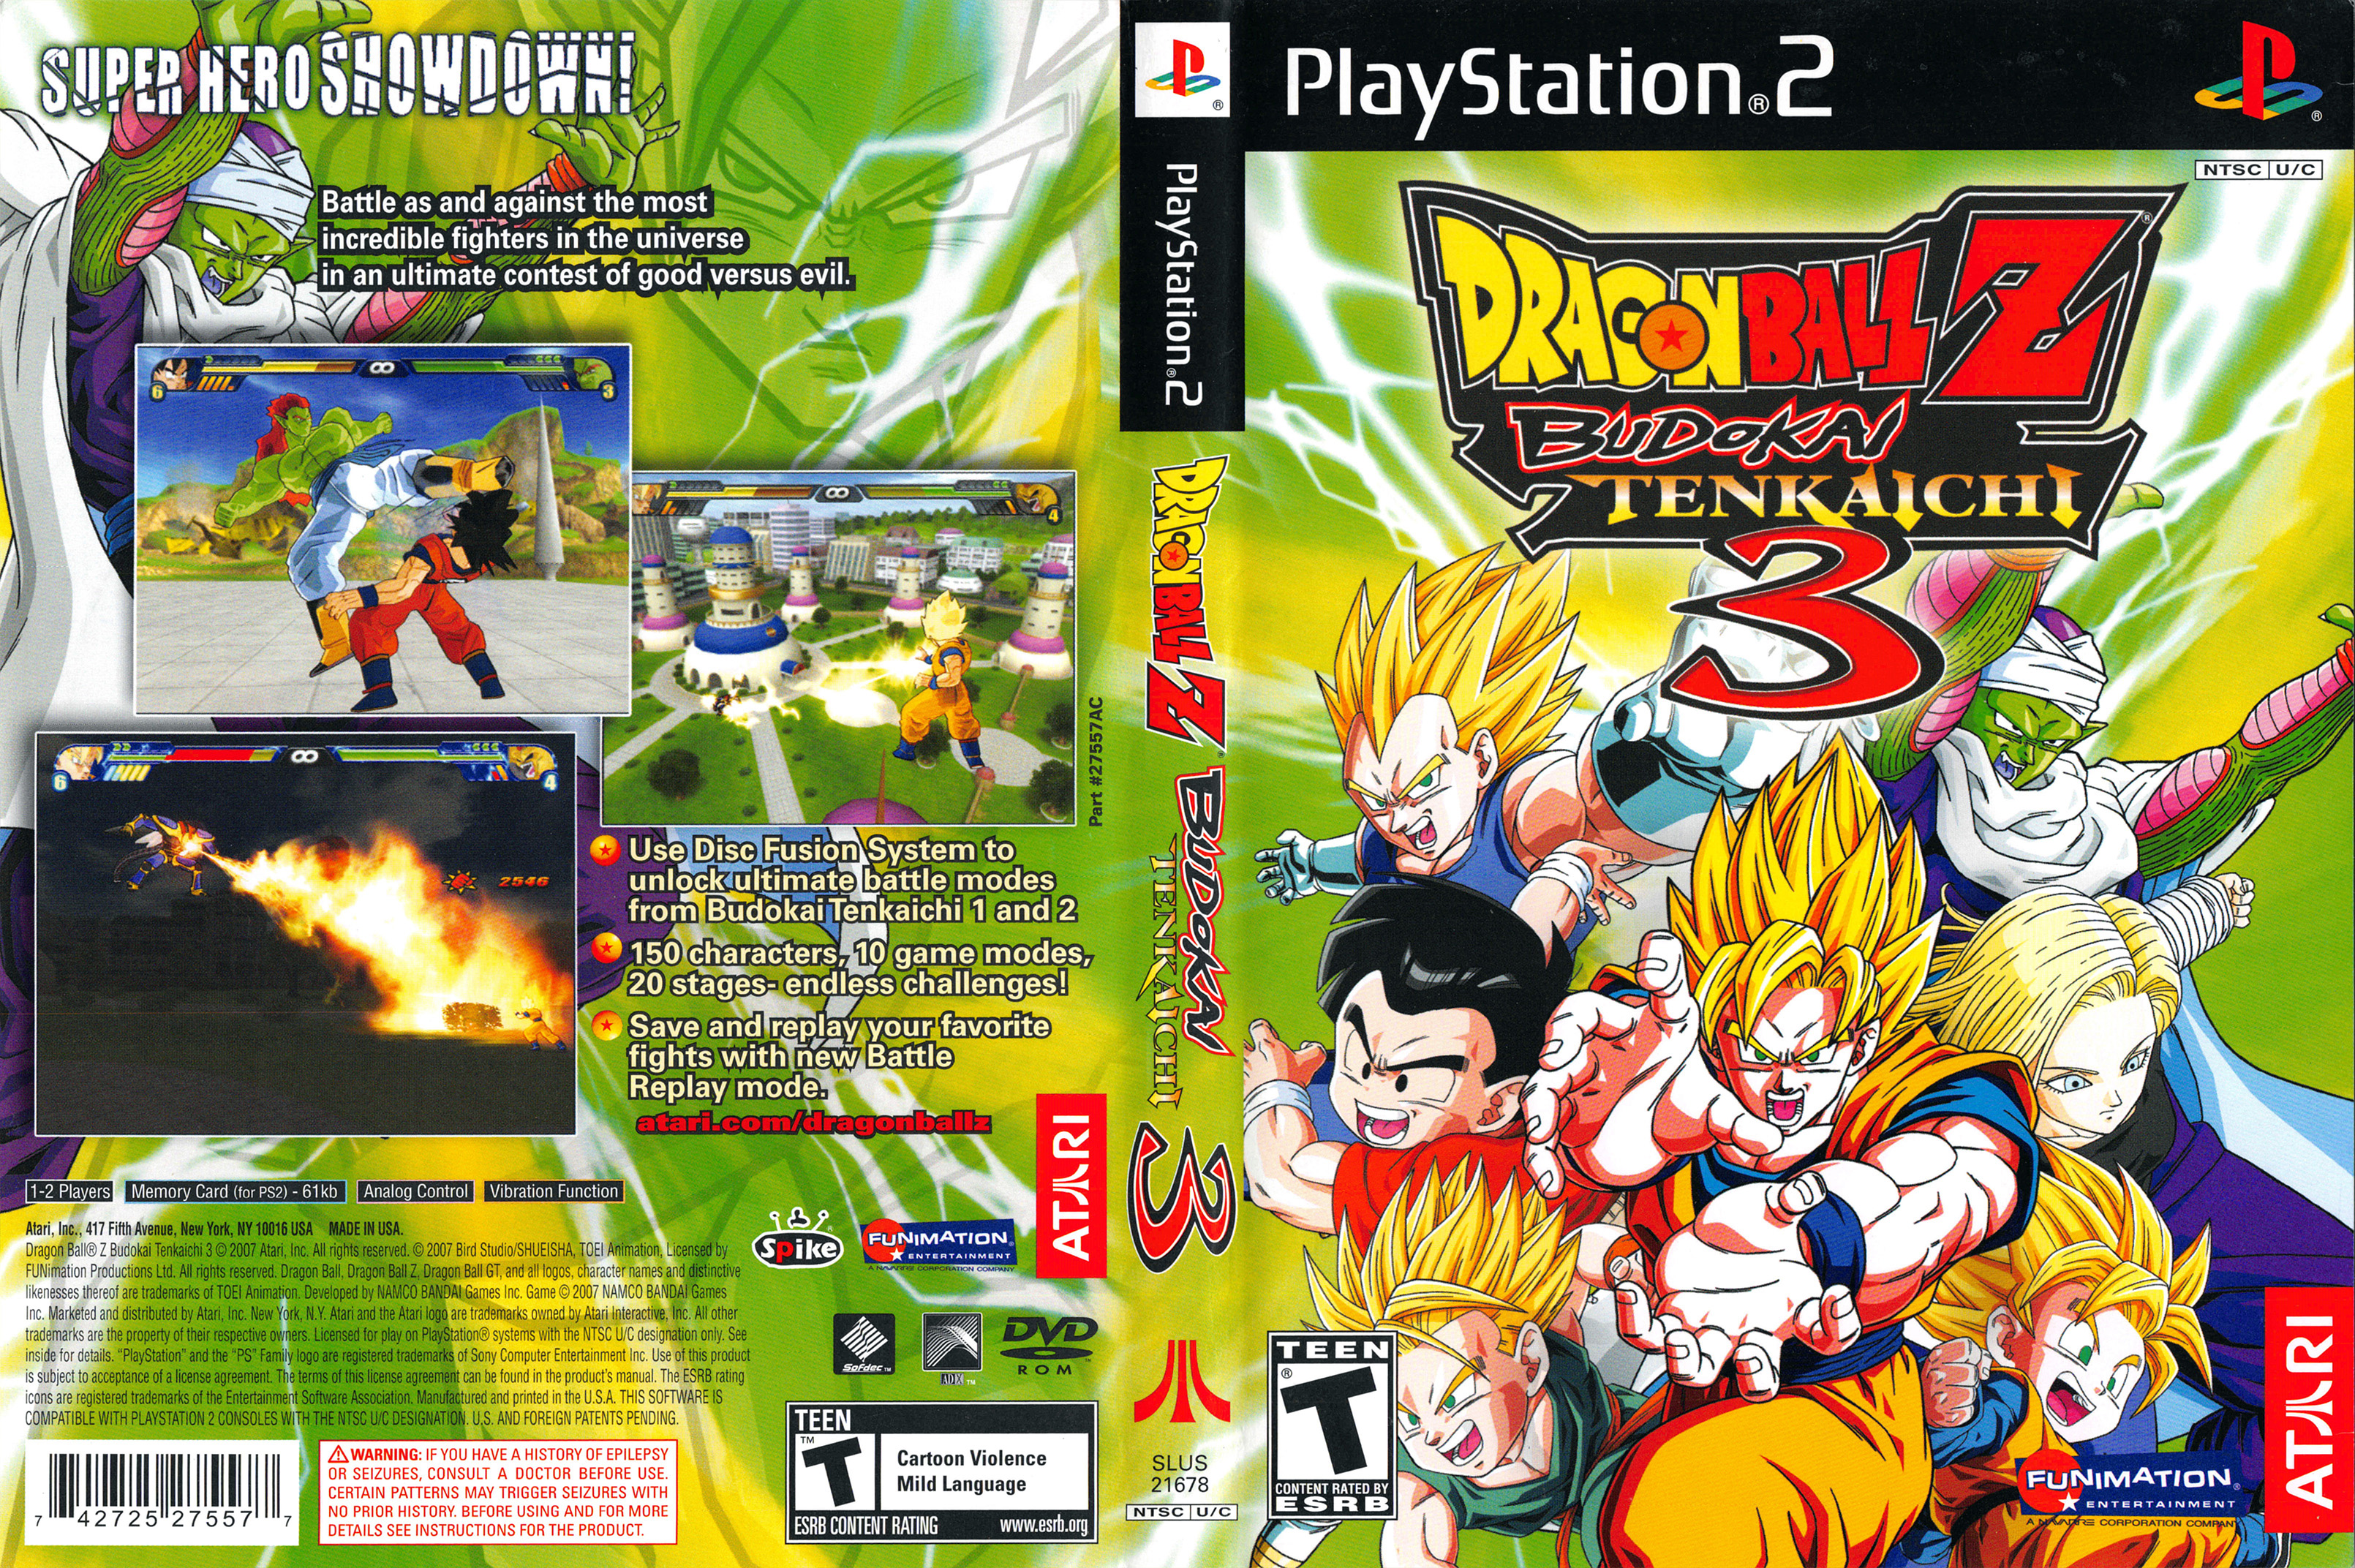 Dragon Ball Z: Budokai Tenkaichi 3 — StrategyWiki